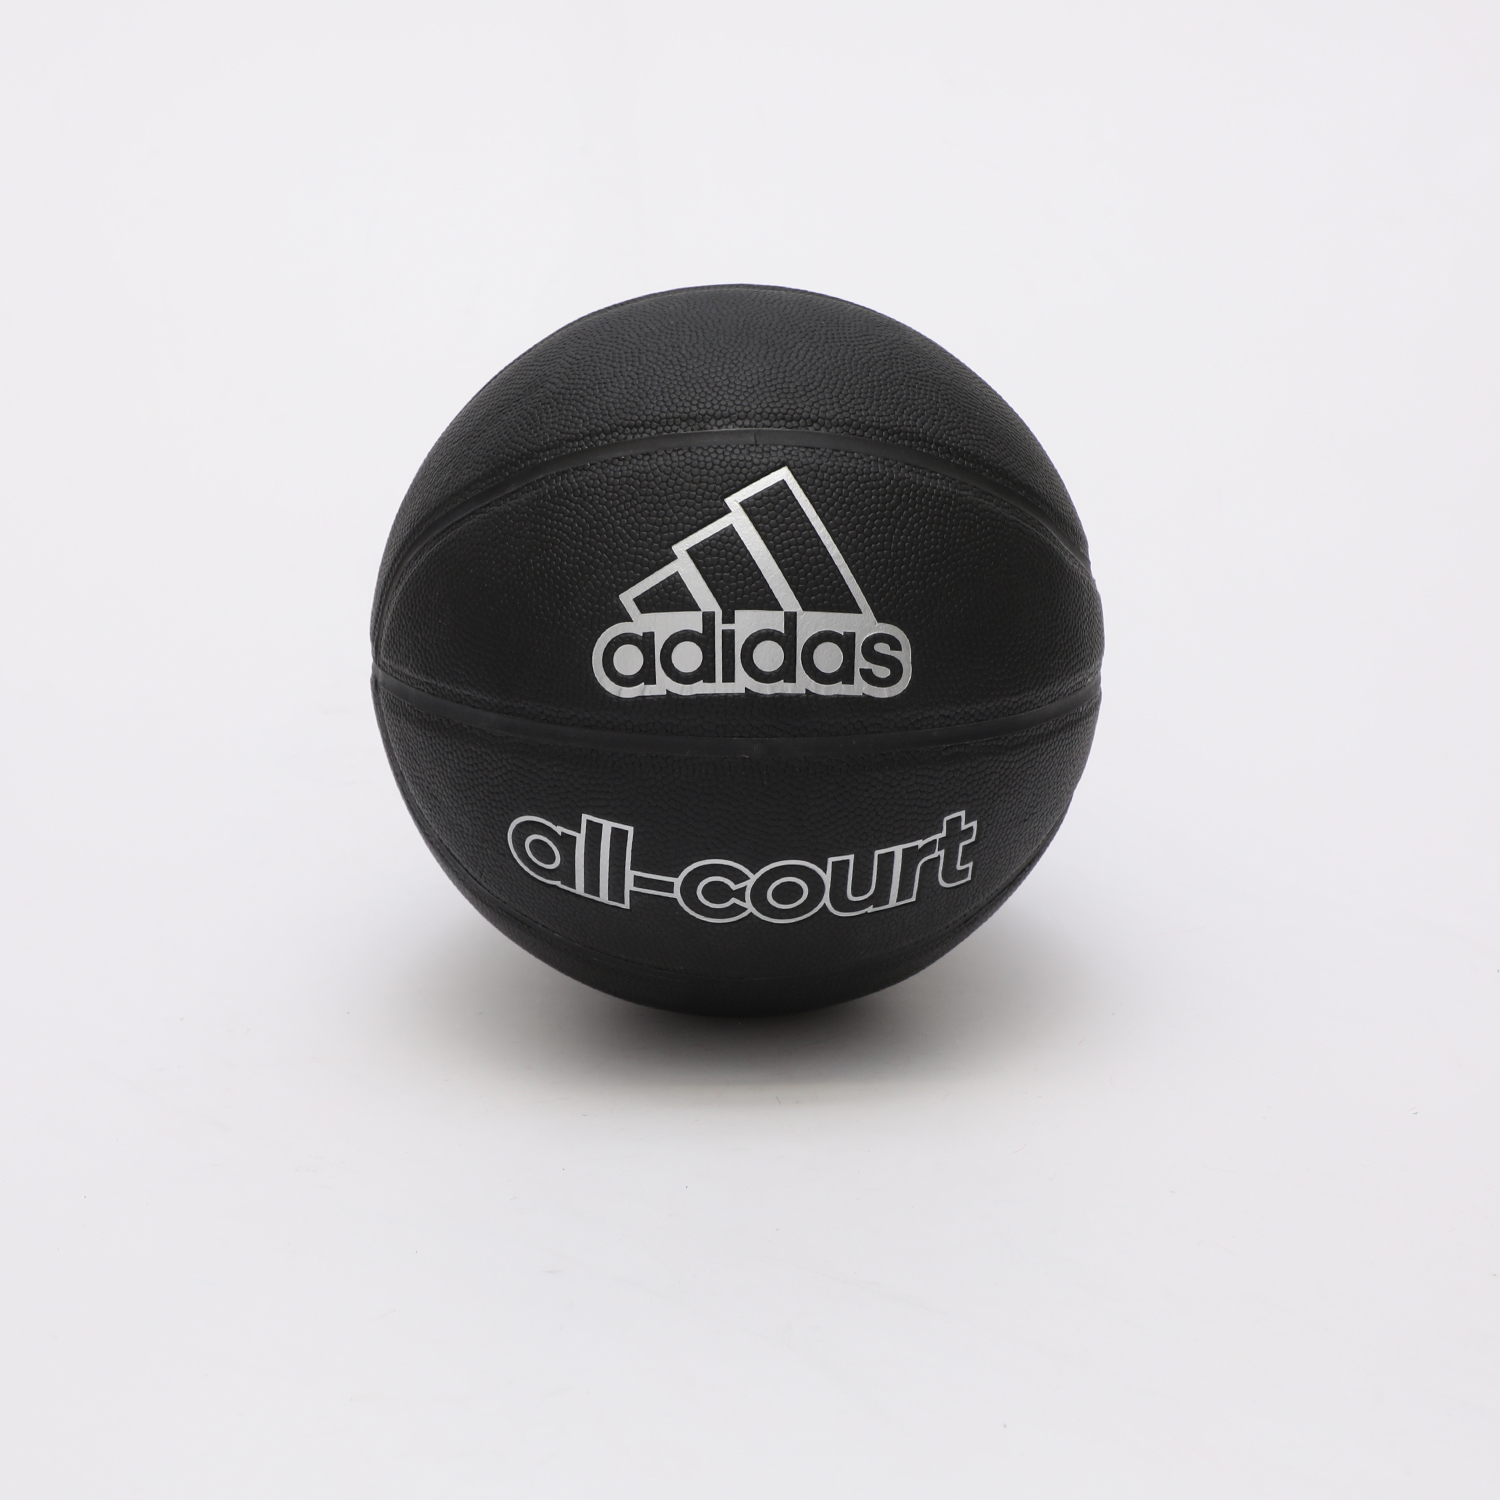 Ανδρικά/Αξεσουάρ/Αθλητικά Είδη/Μπάλες adidas Performance - Μπάλα basketball adidas Performance Z36162 All Court μαύρη